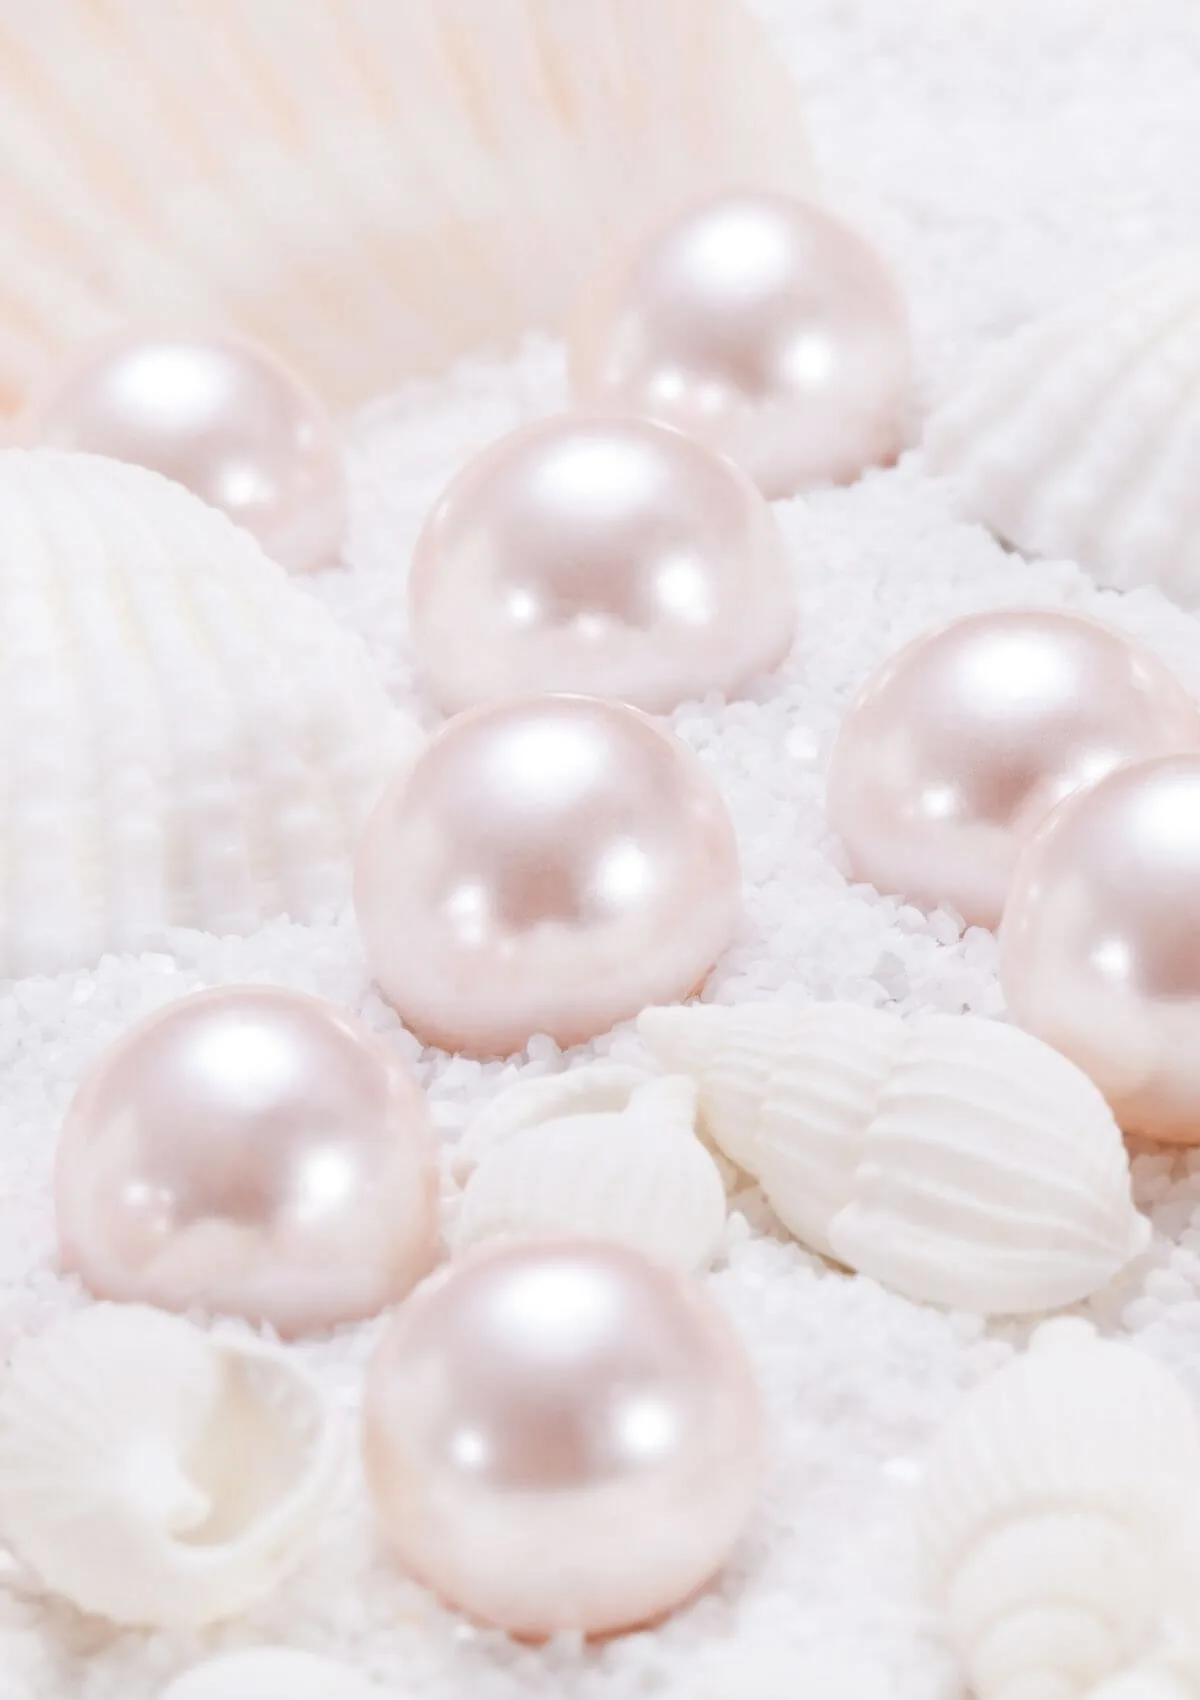 Philippine pearl souvenirs